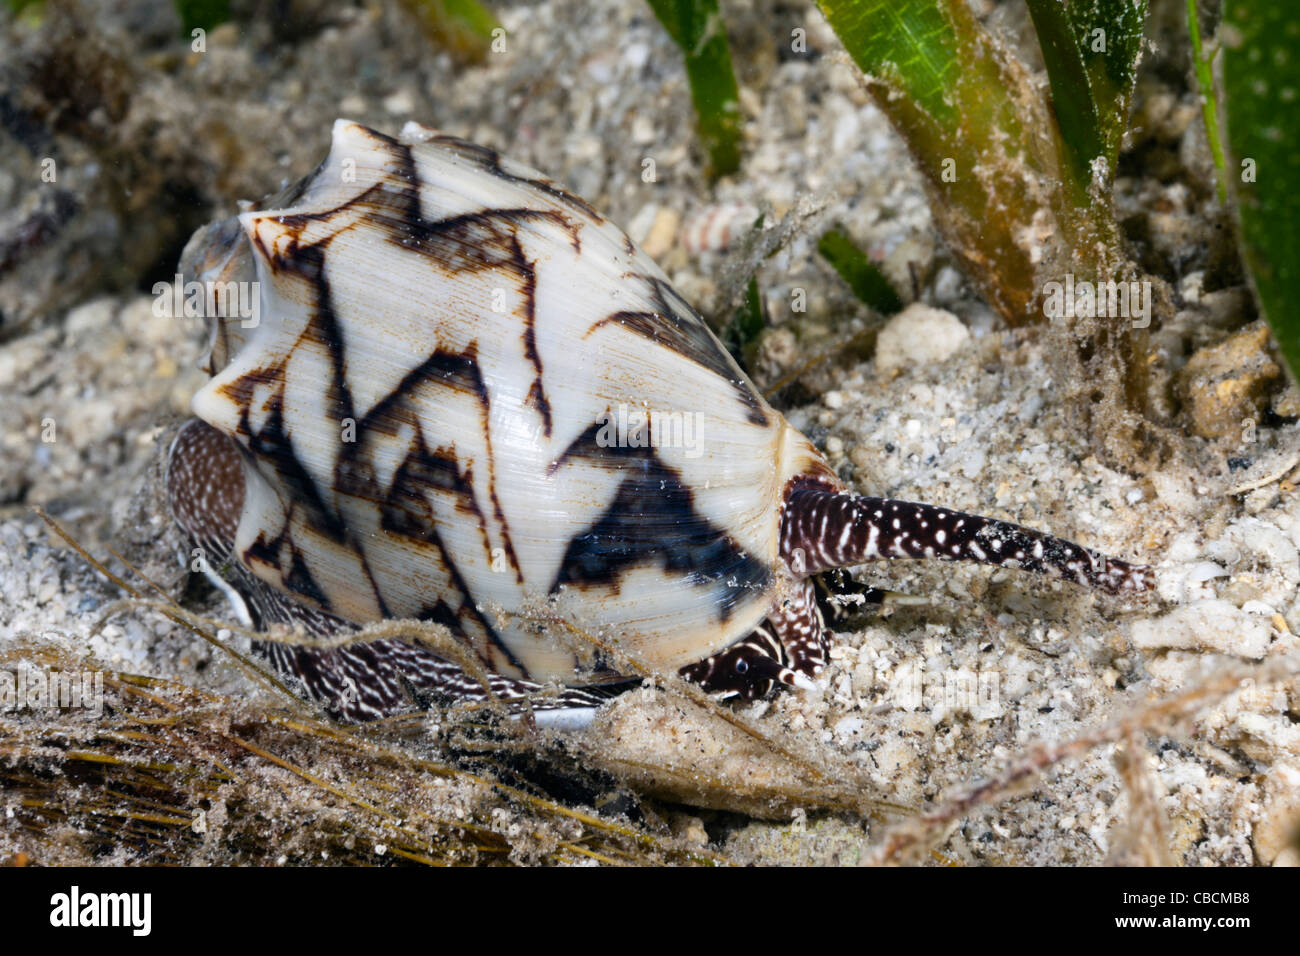 Bat CARACOL caracol de mar depredadora, Cymbiola vespertilio, la bahía de Cenderawasih, Papua Occidental, Indonesia Foto de stock